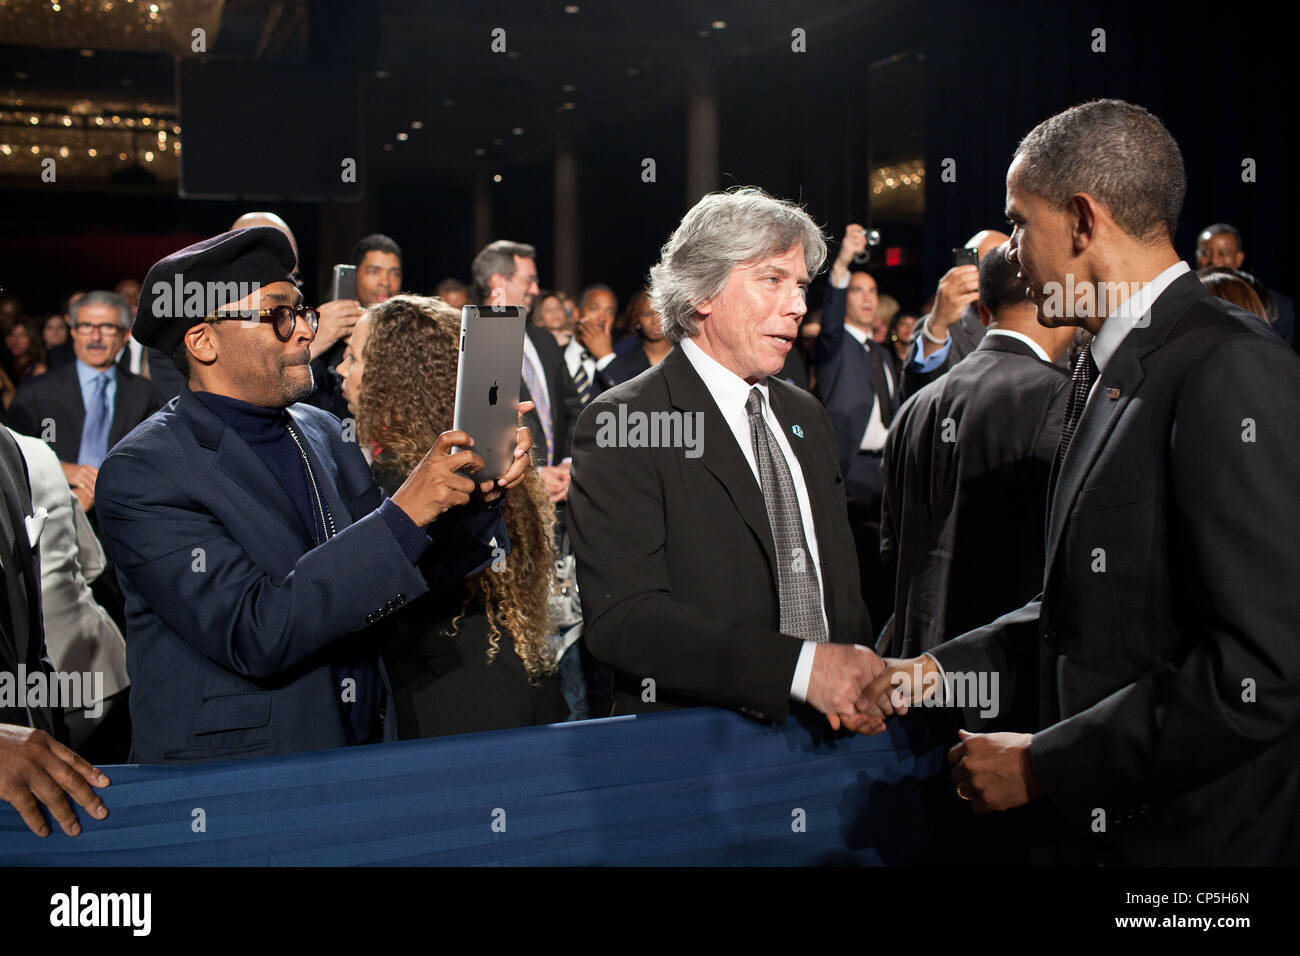 Le cinéaste Spike Lee utilise son iPad pour photographier le président Barack Obama alors qu'il accueille les clients dans le réseau d'action national. Banque D'Images